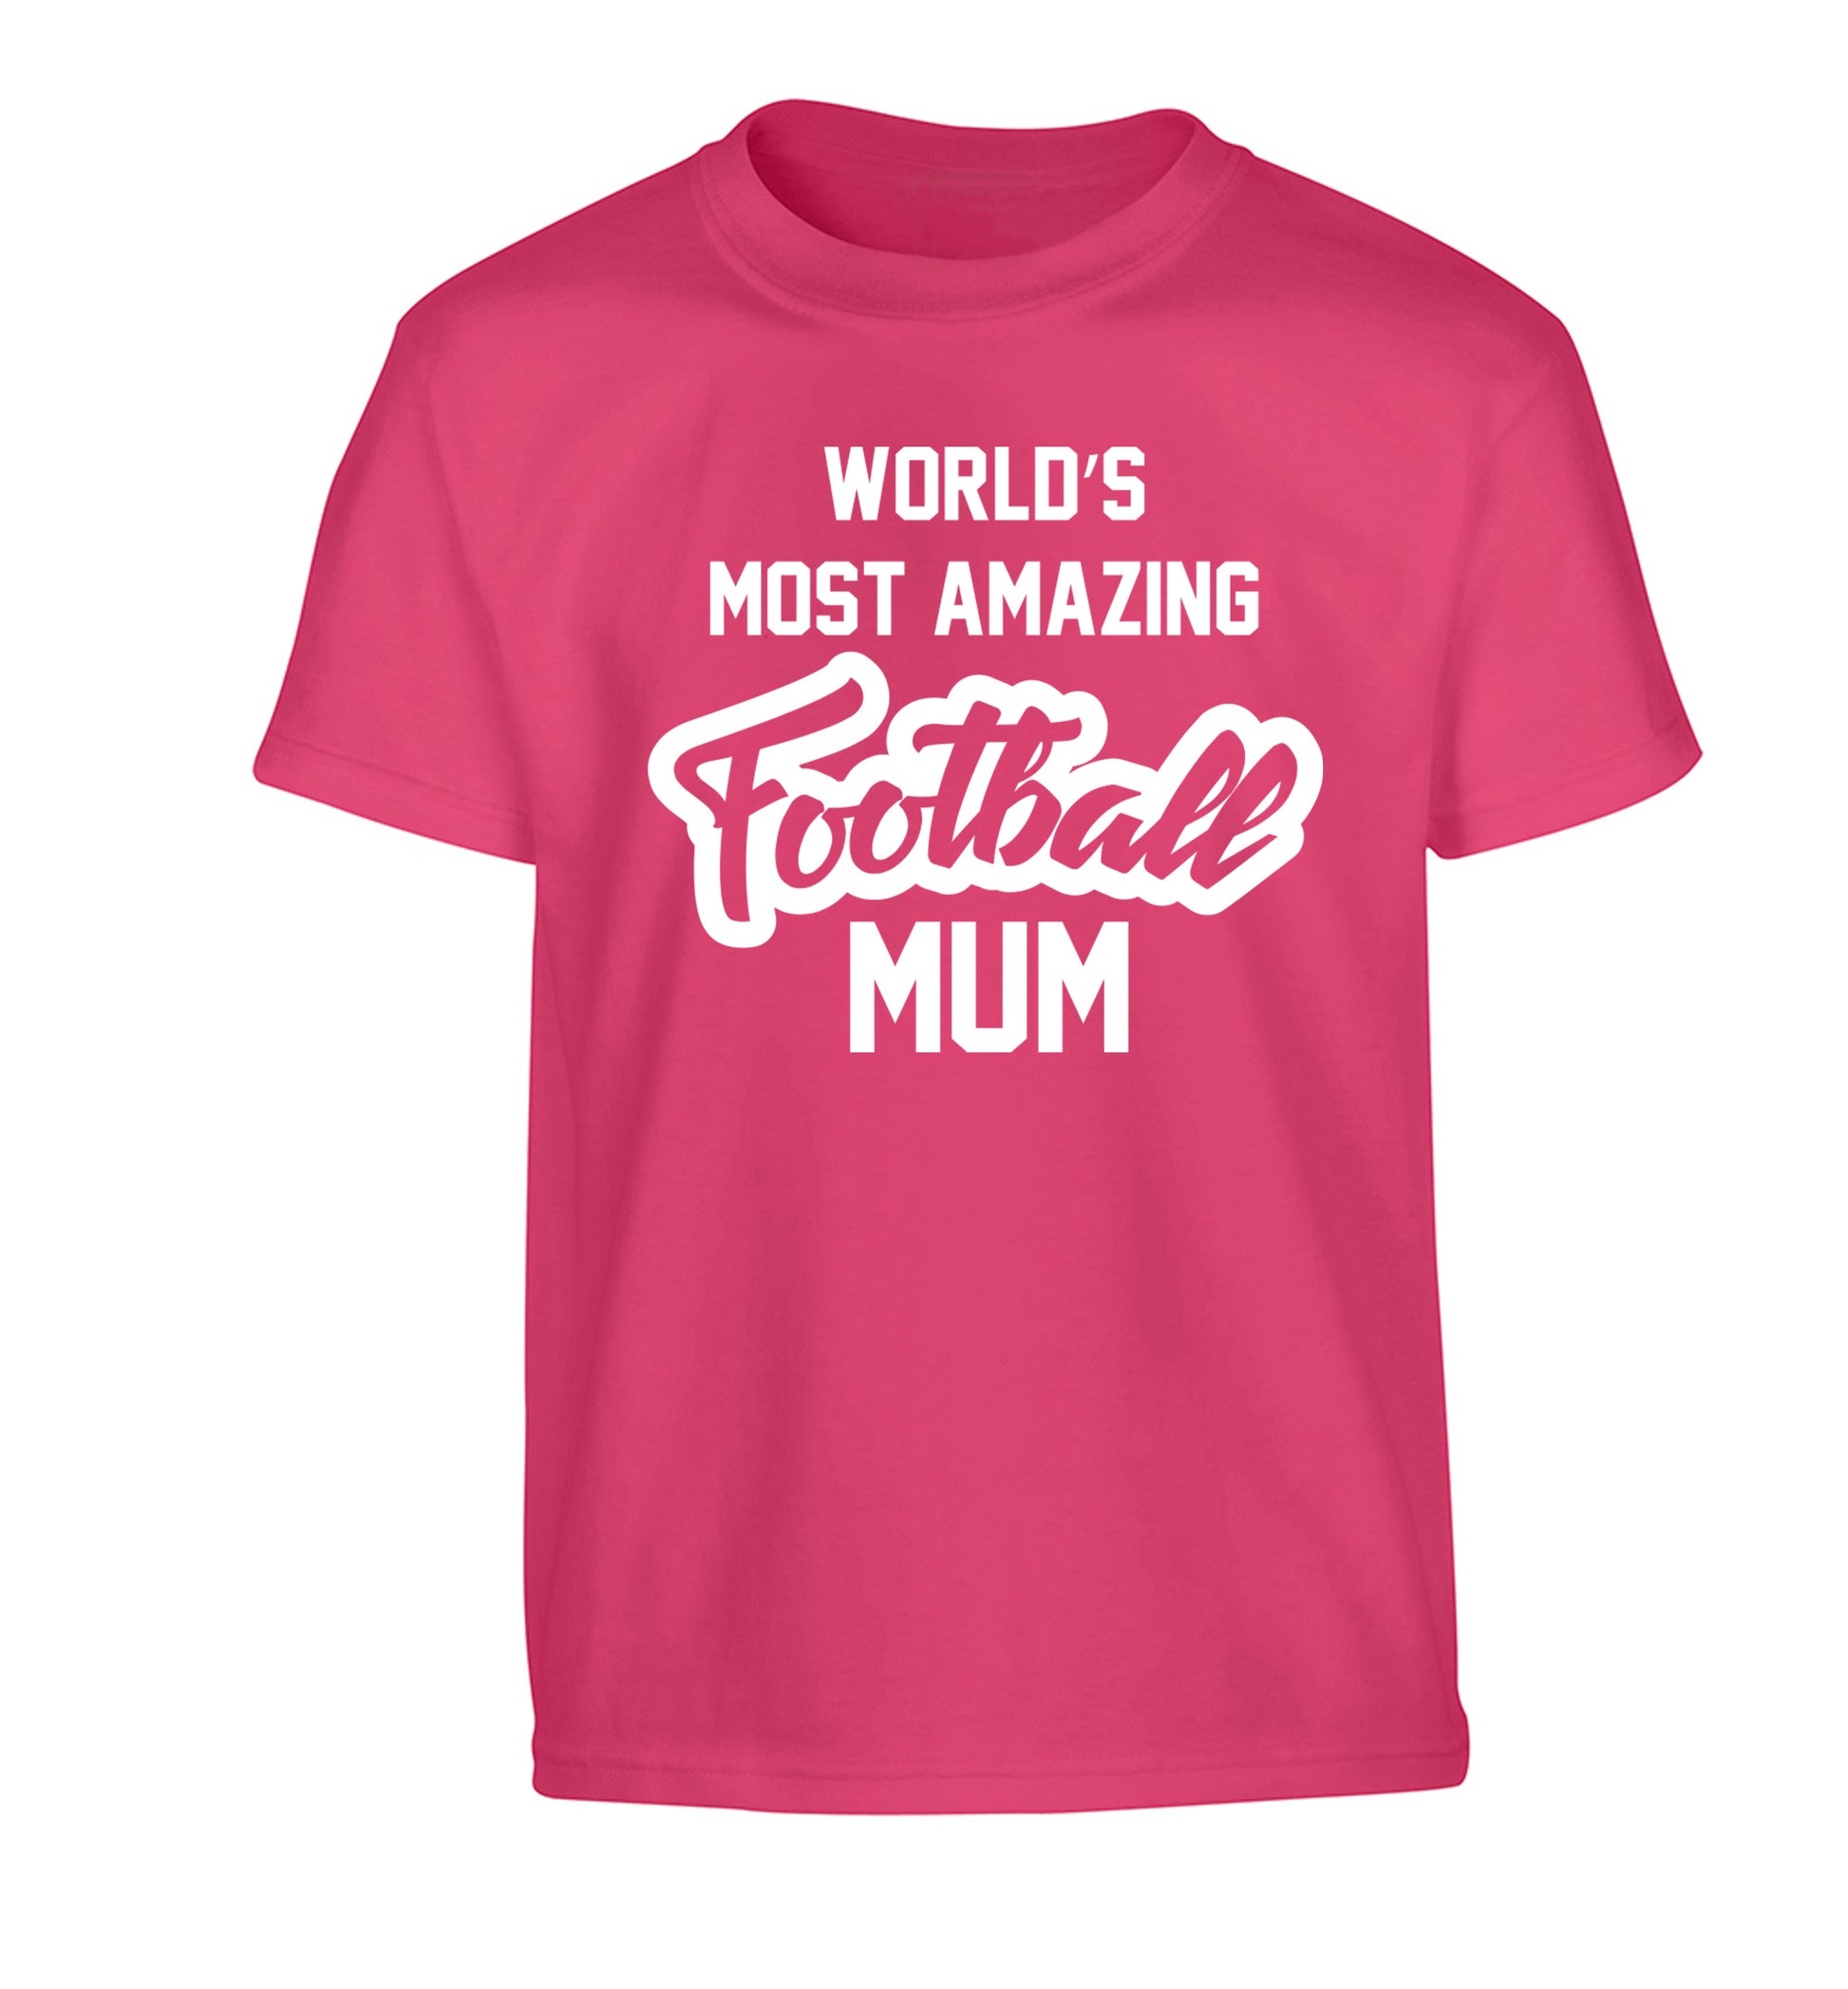 Worlds most amazing football mum Children's pink Tshirt 12-14 Years